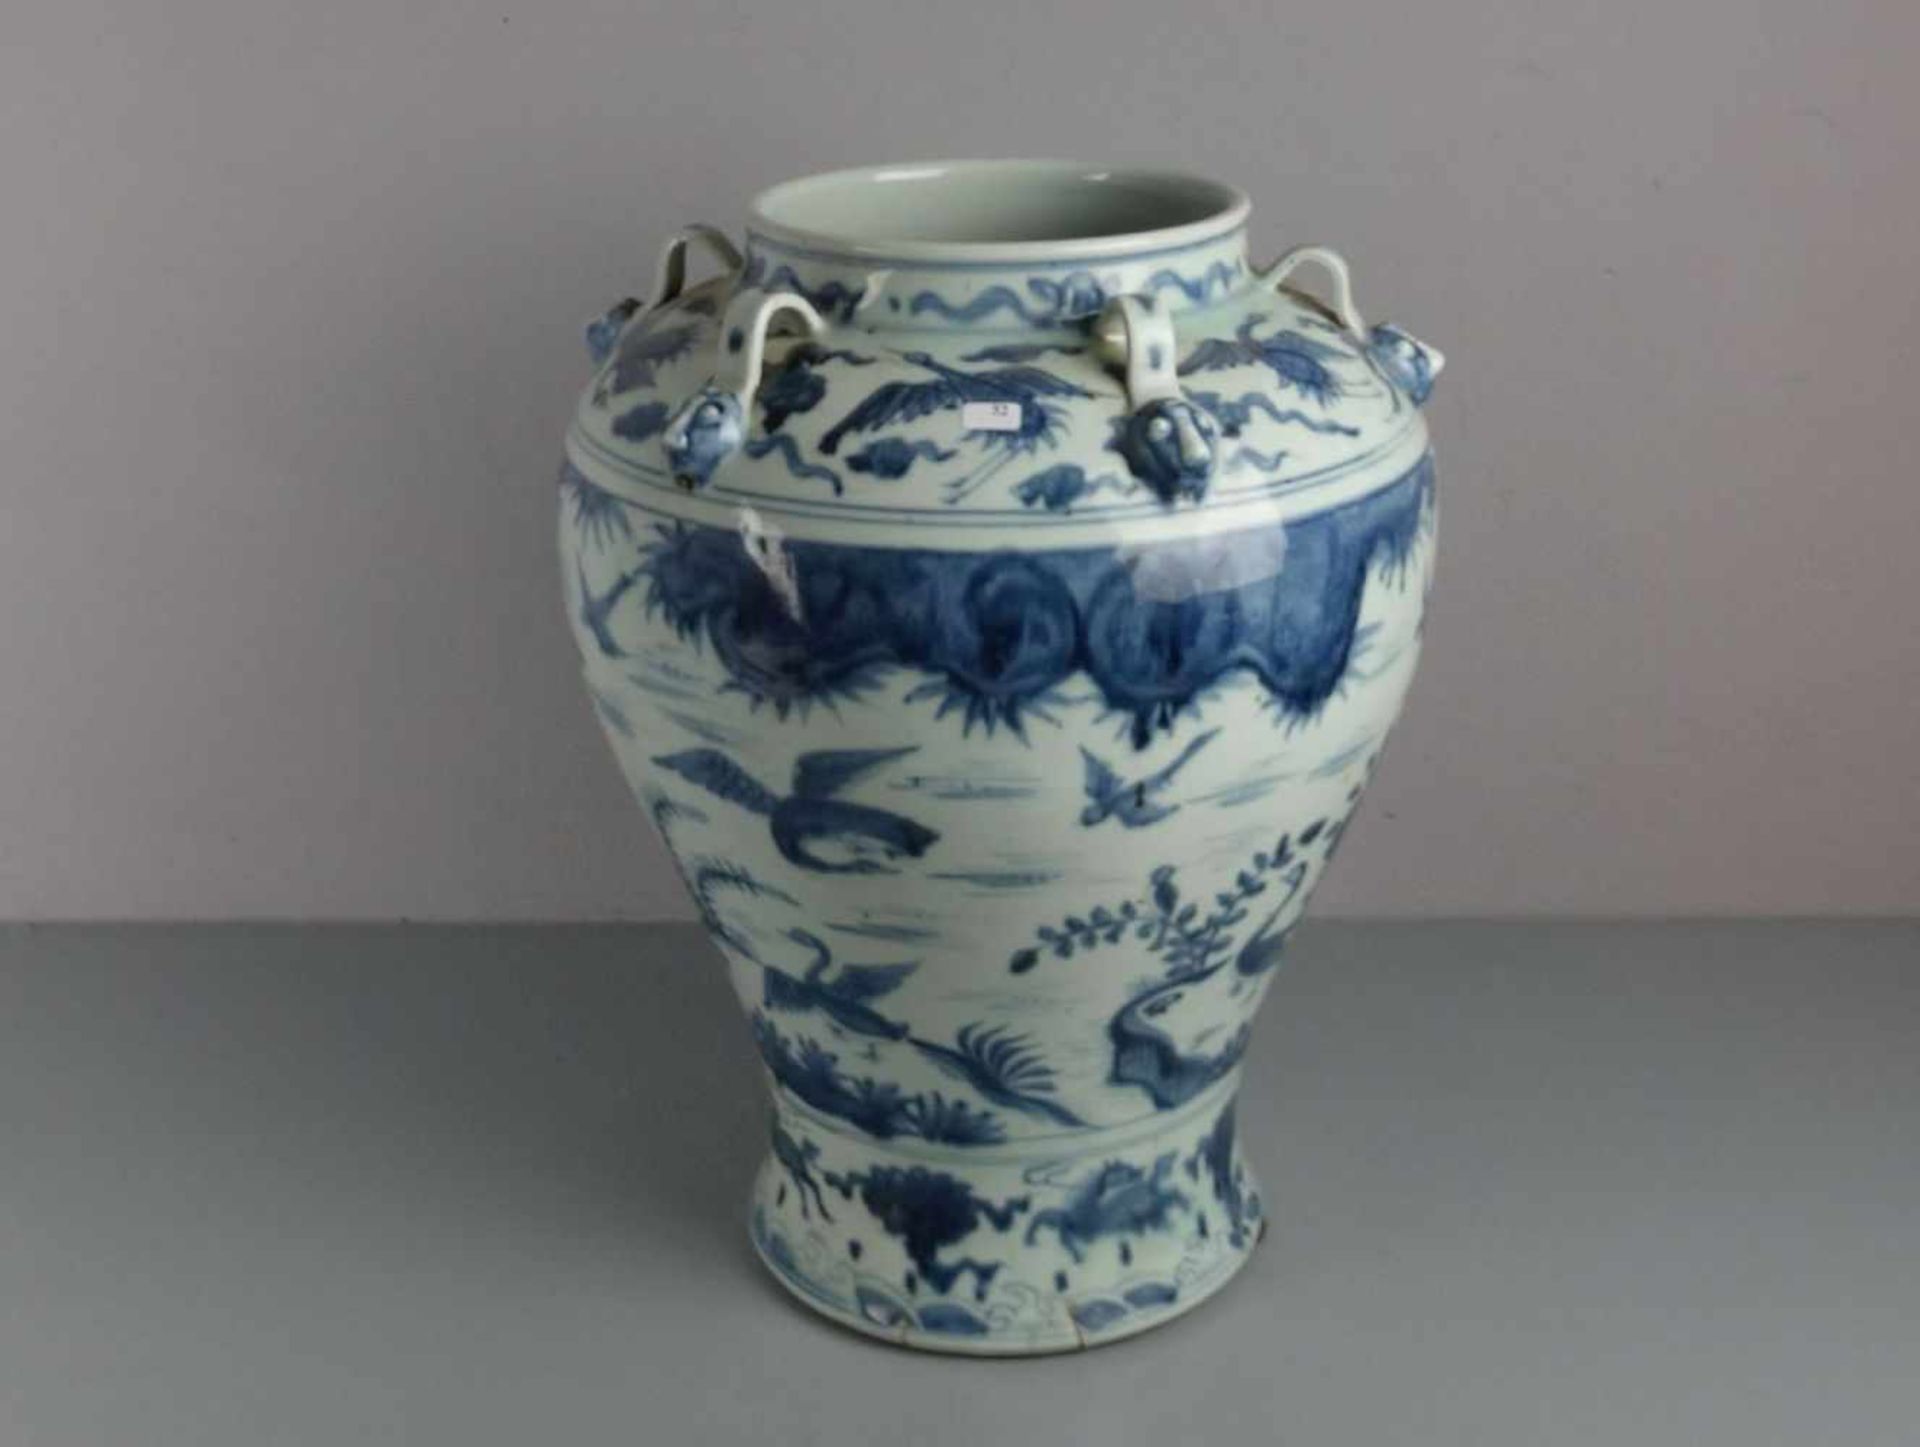 CHINESISCHE VASE, Porzellan (ungemarkt), späte Qing Dynastie / chinese vase, late Qing dynasty. - Image 3 of 3